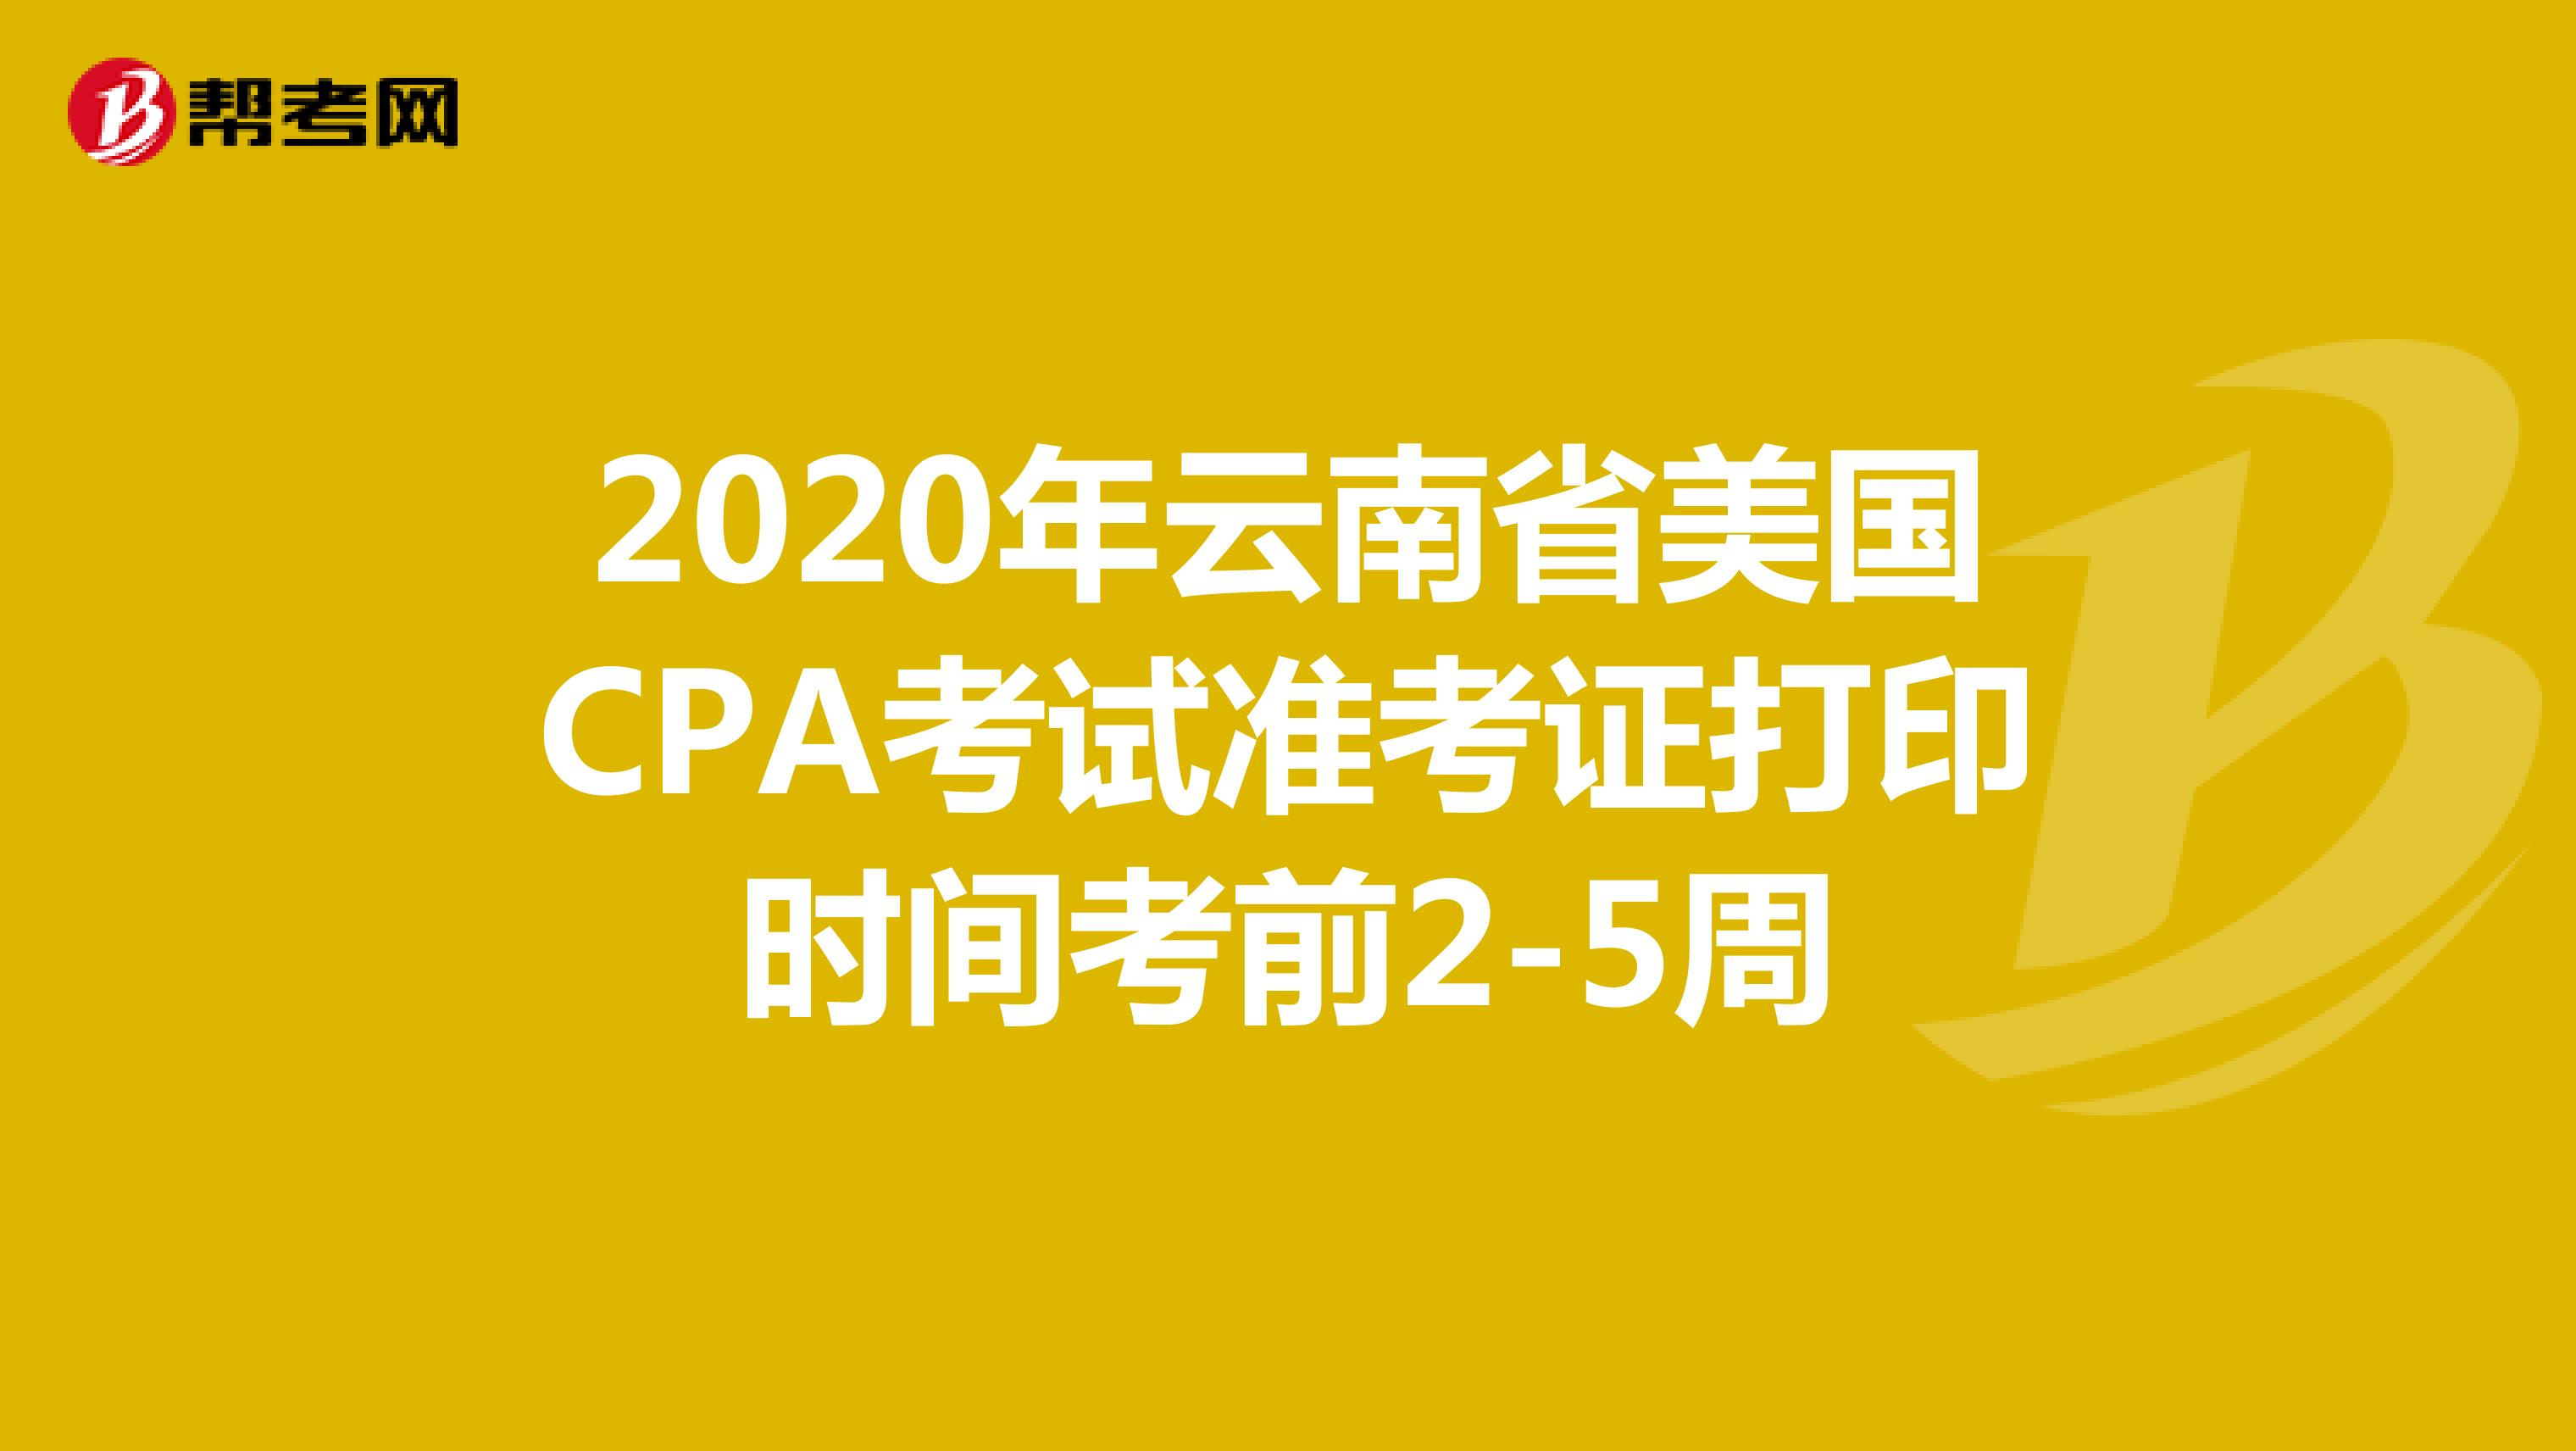 2020年云南省美国CPA考试准考证打印时间考前2-5周